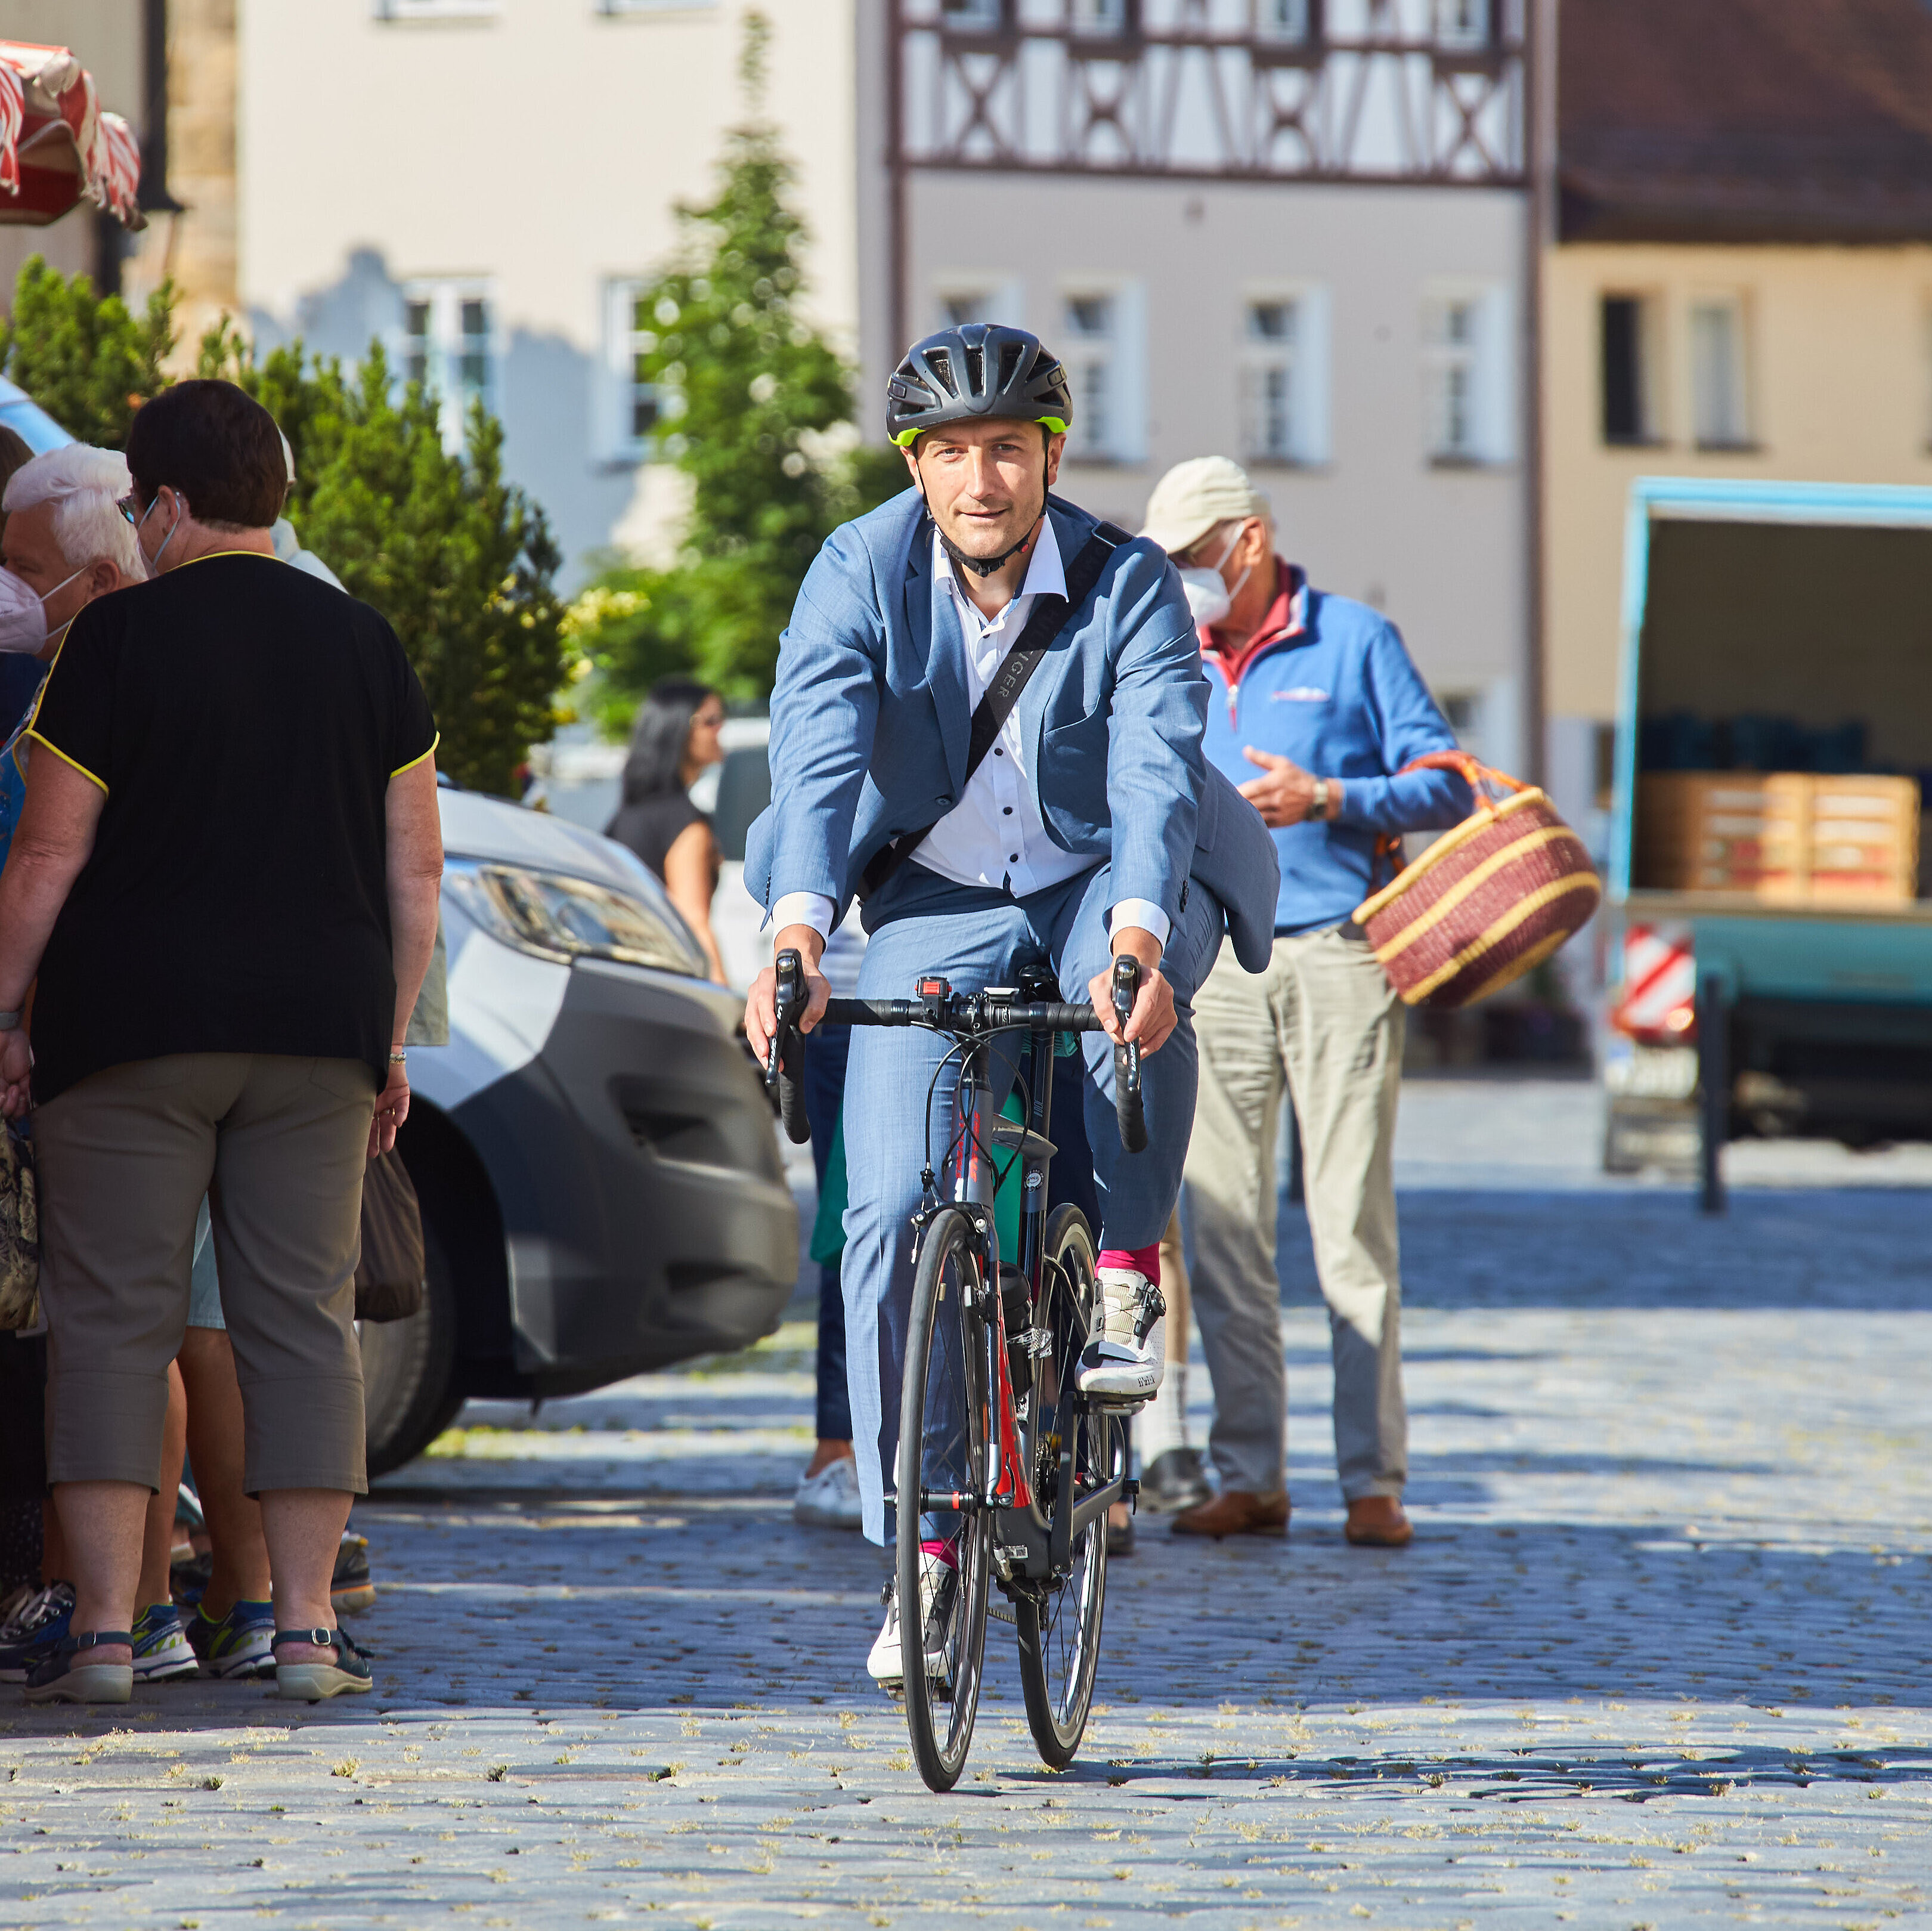 Mann im Anzug fährt mit einem Rennrad über einen Marktplatz.